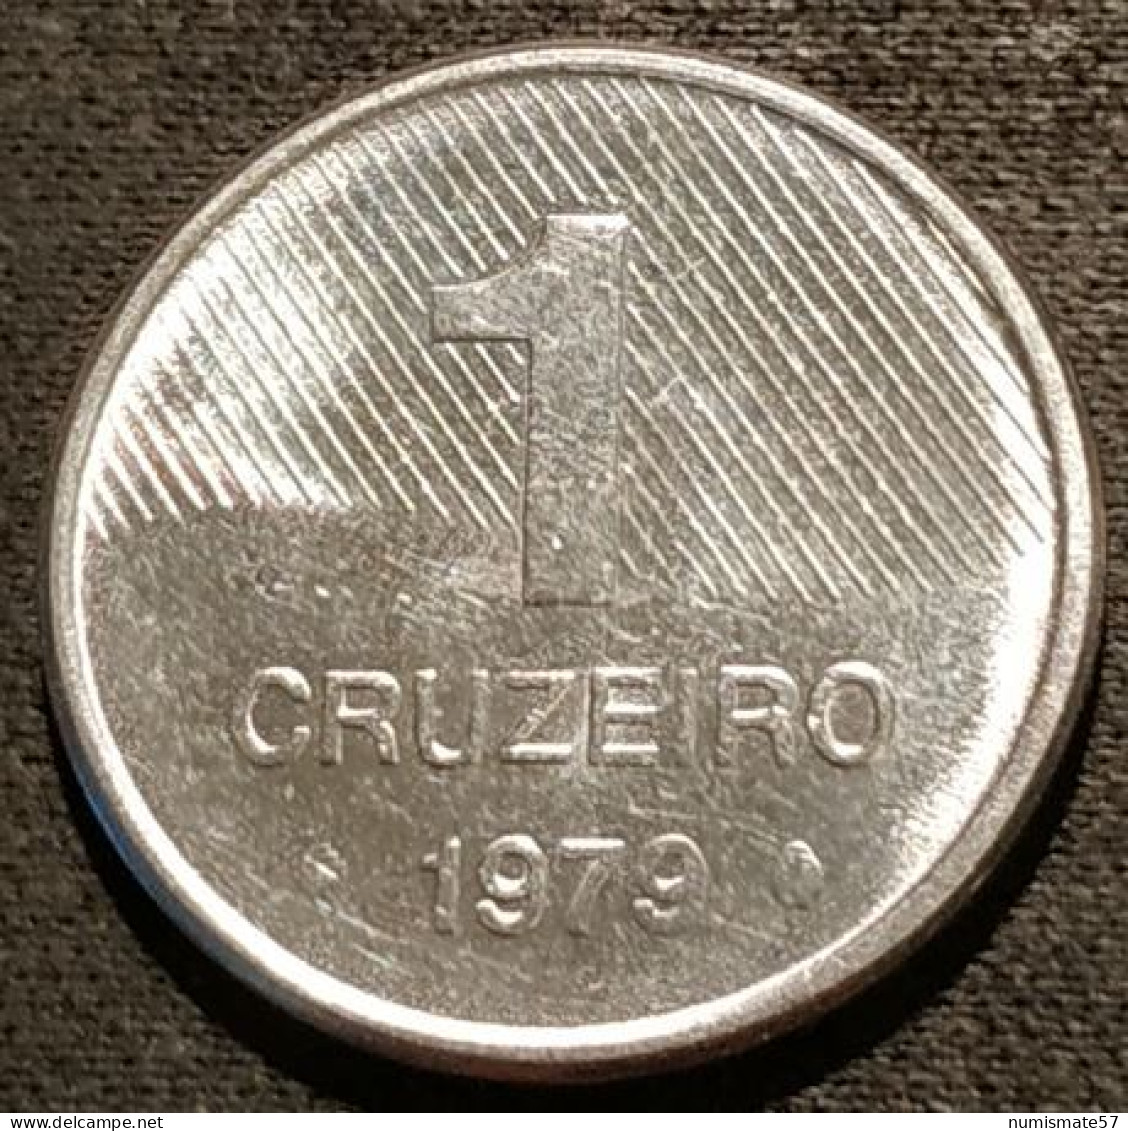 BRESIL - 1 CRUZEIRO 1979 - Canne à Sucre - KM 590 - Brasil - Brazil - Brazil